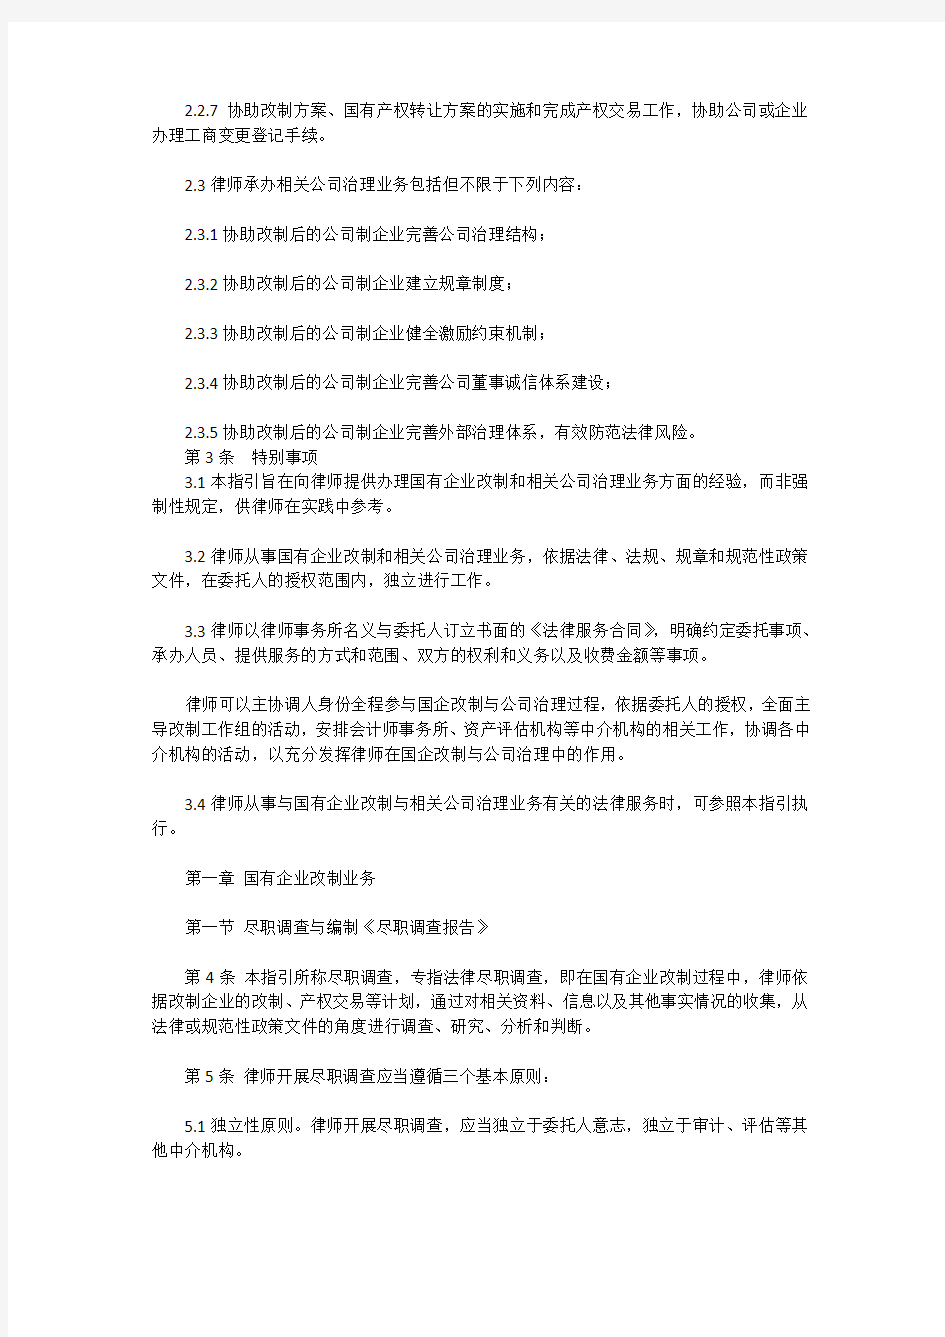 中华全国律师协会律师办理国有企业改制与相关公司治理业务操作指引